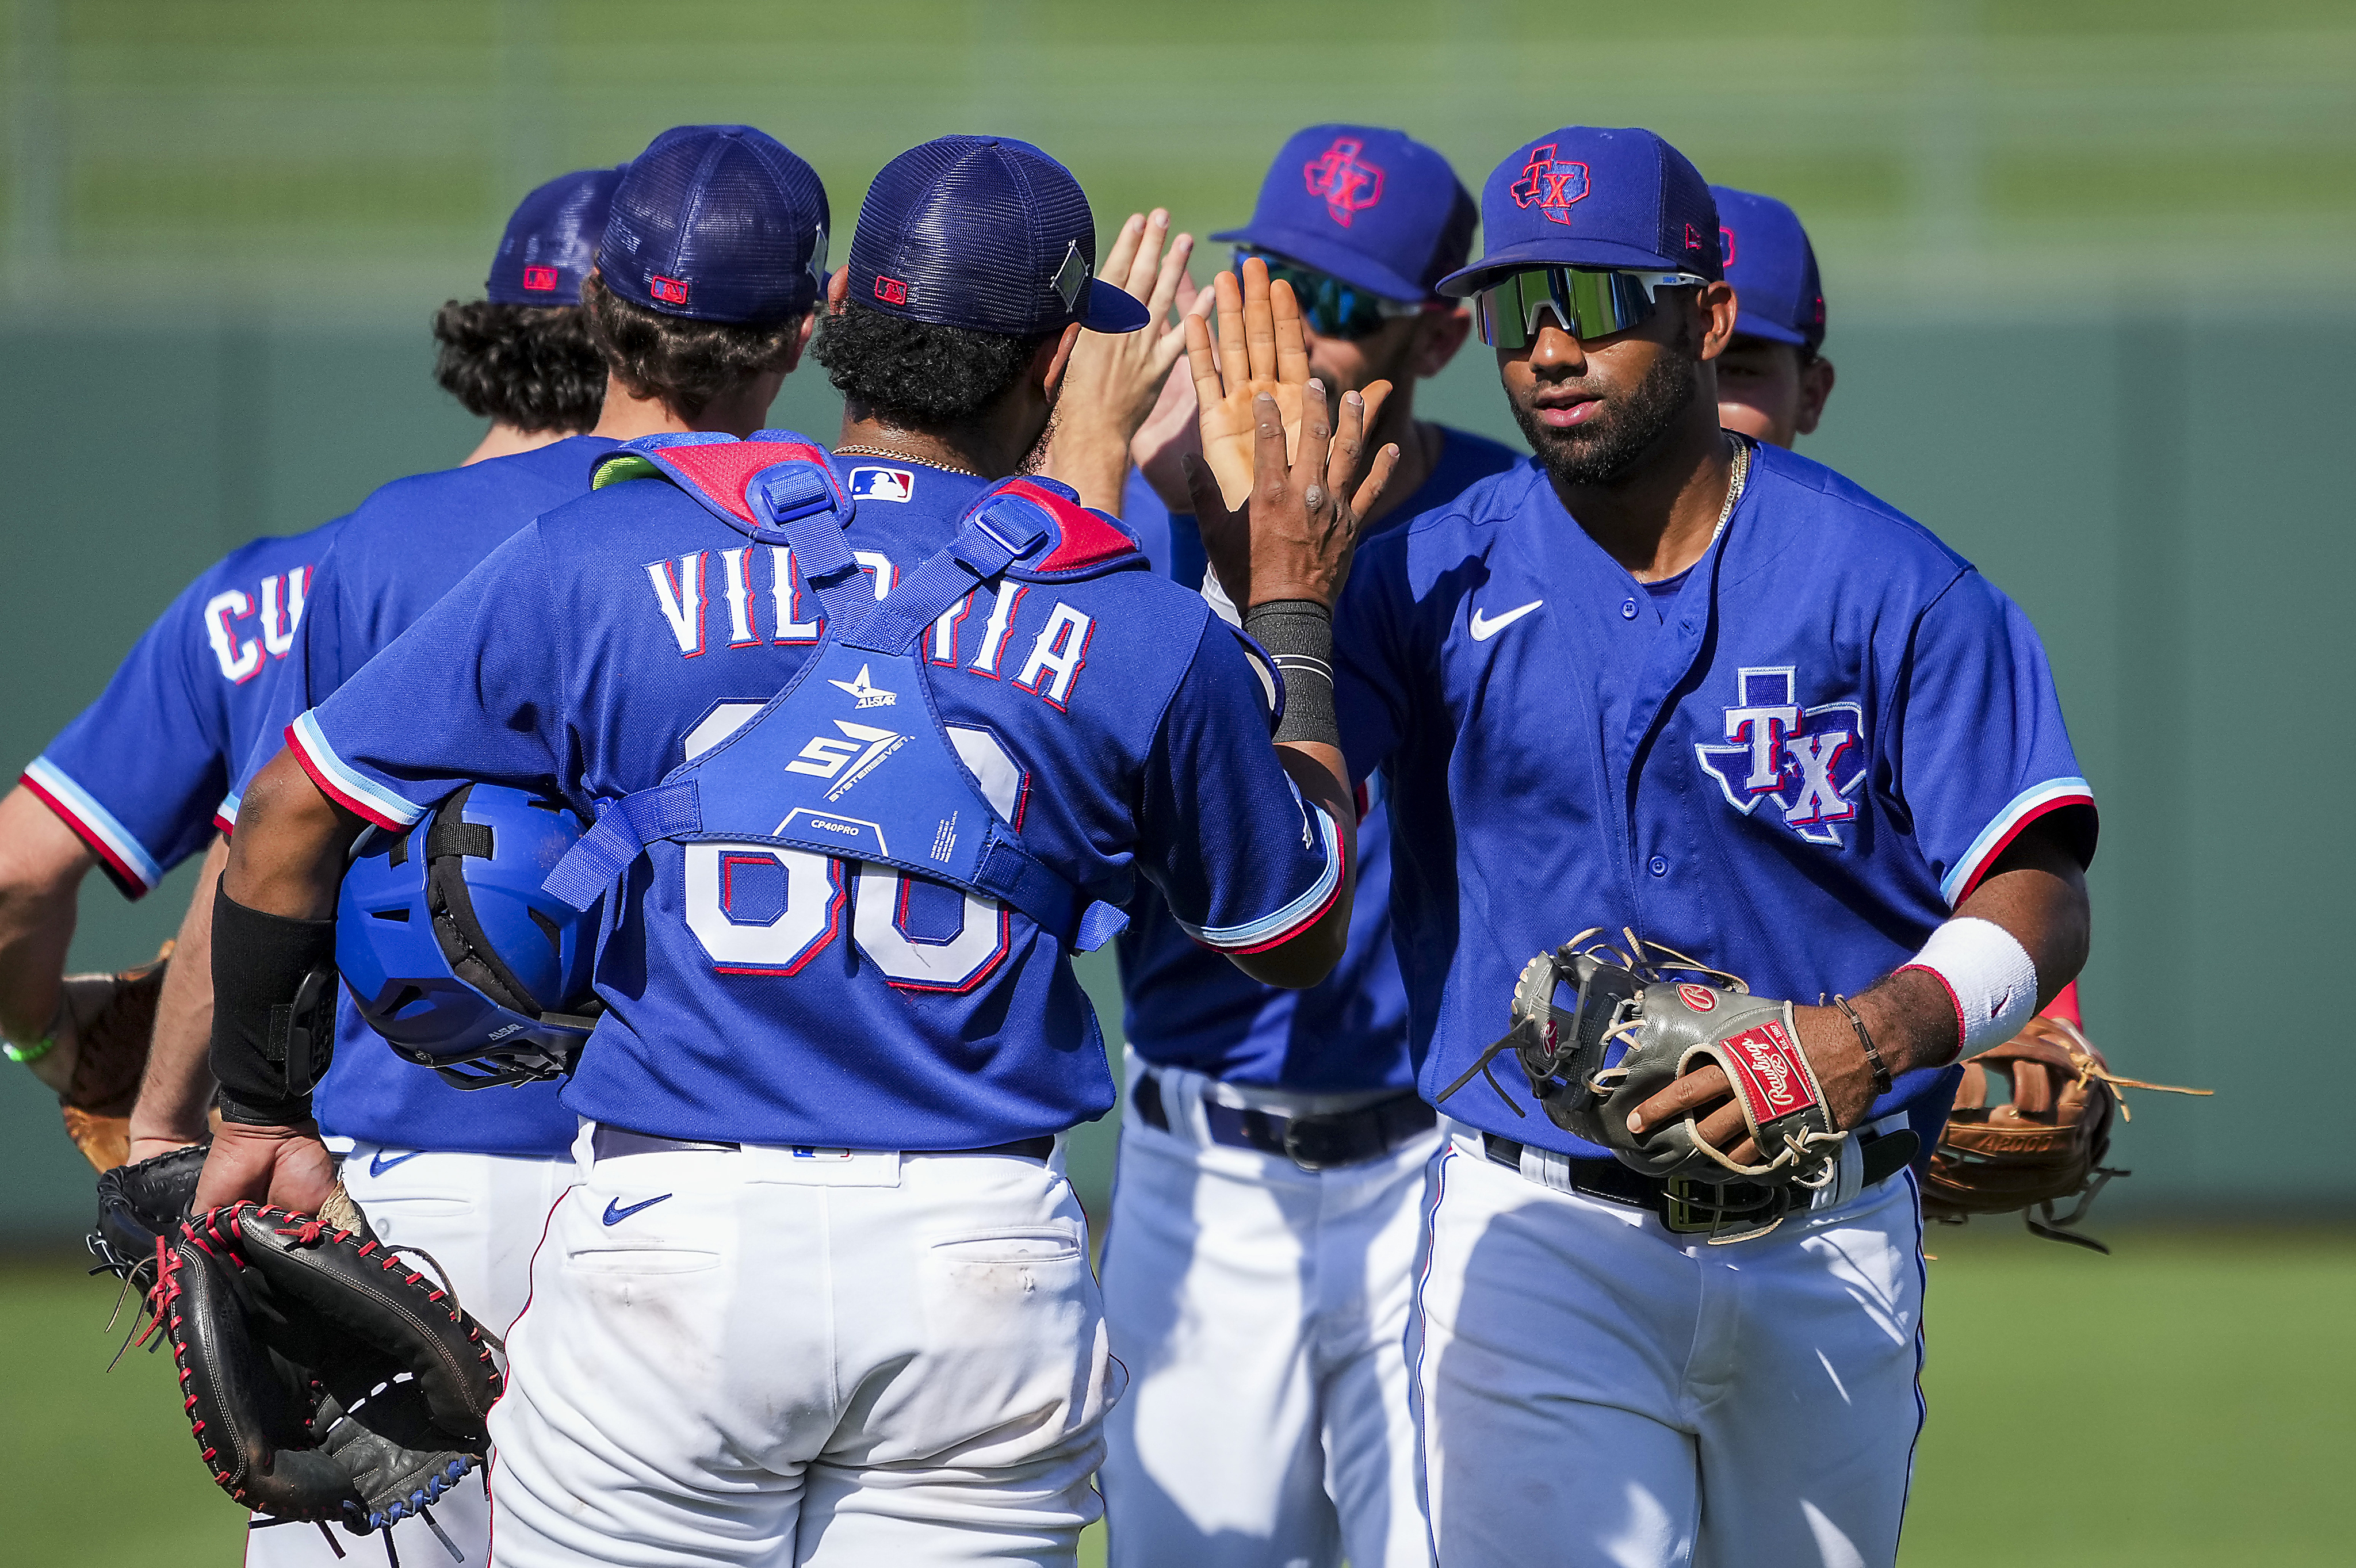 Texas Rangers: Cómo ver por TV e internet y escuchar por radio los juegos  de beisbol